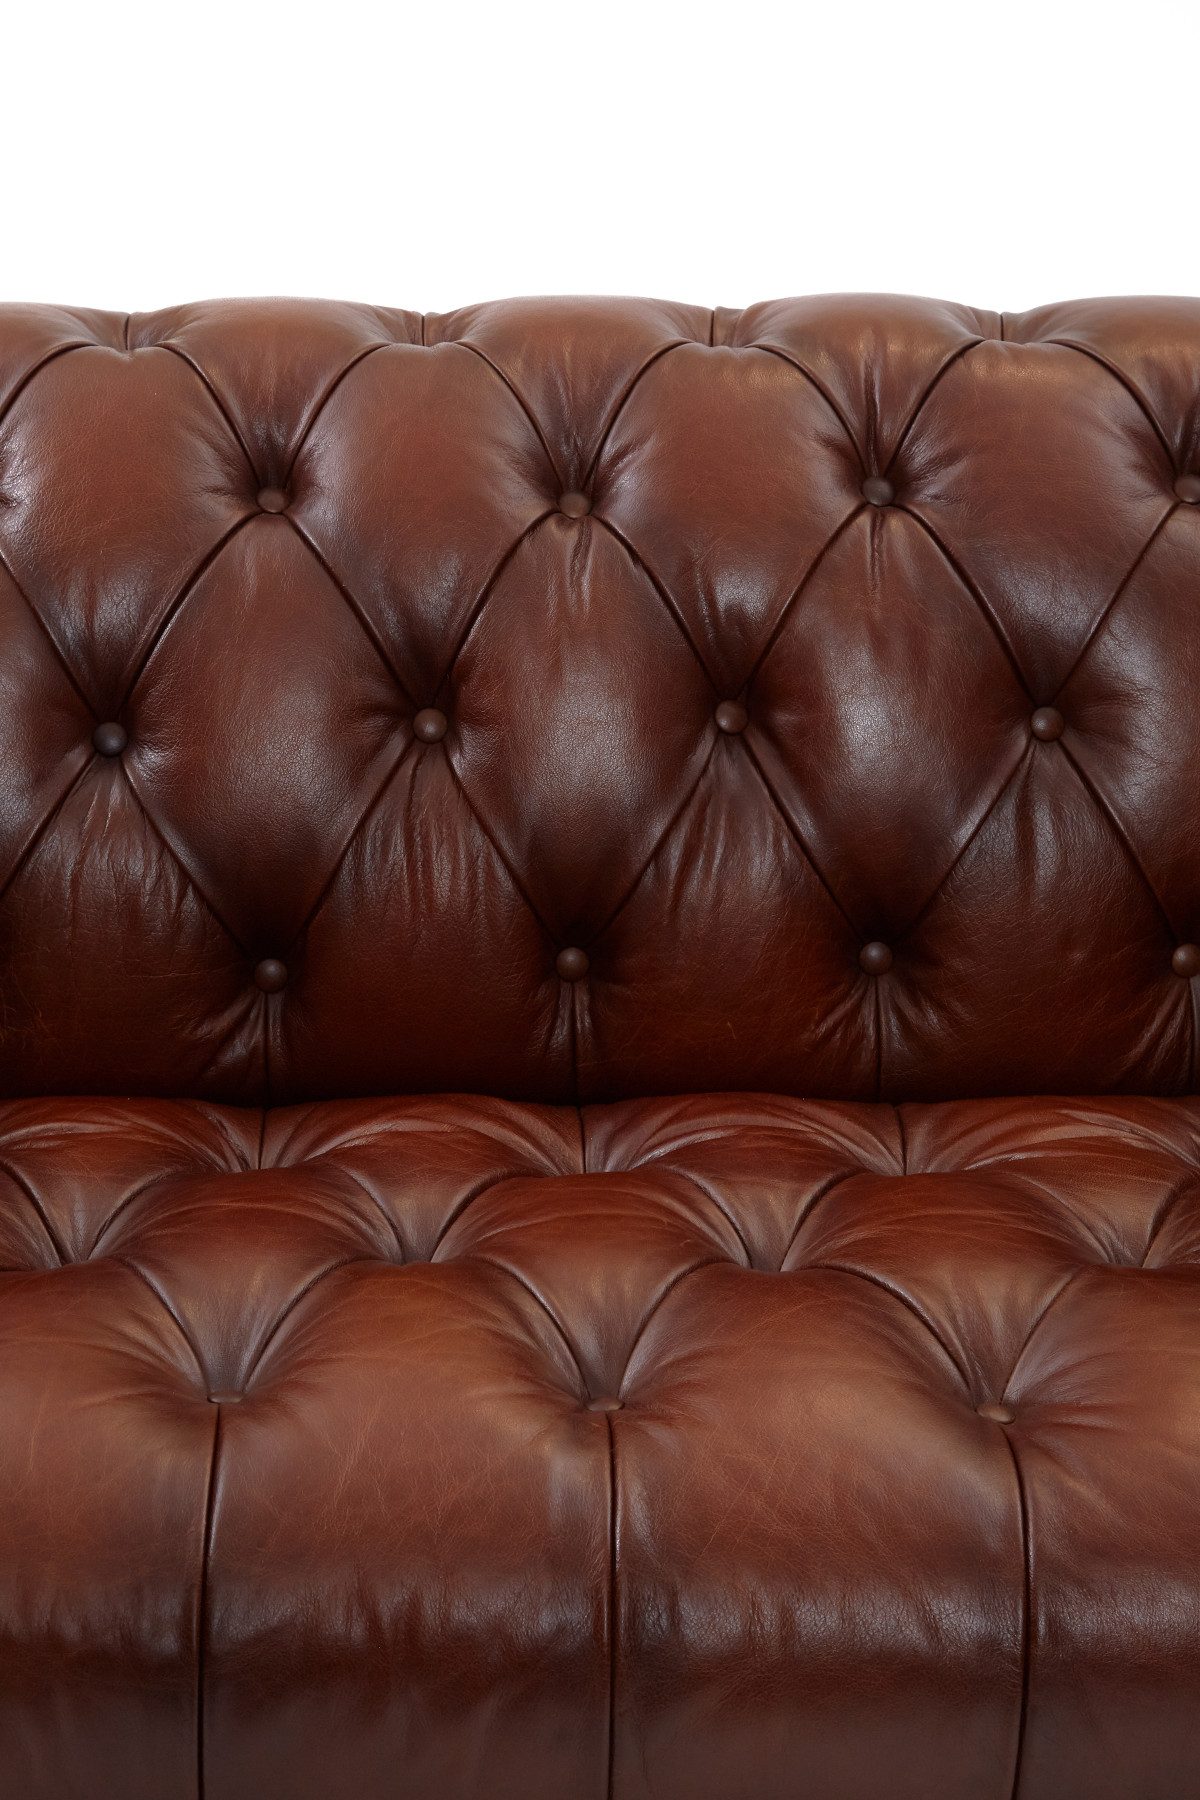 Leopold 3 Seater Sofa